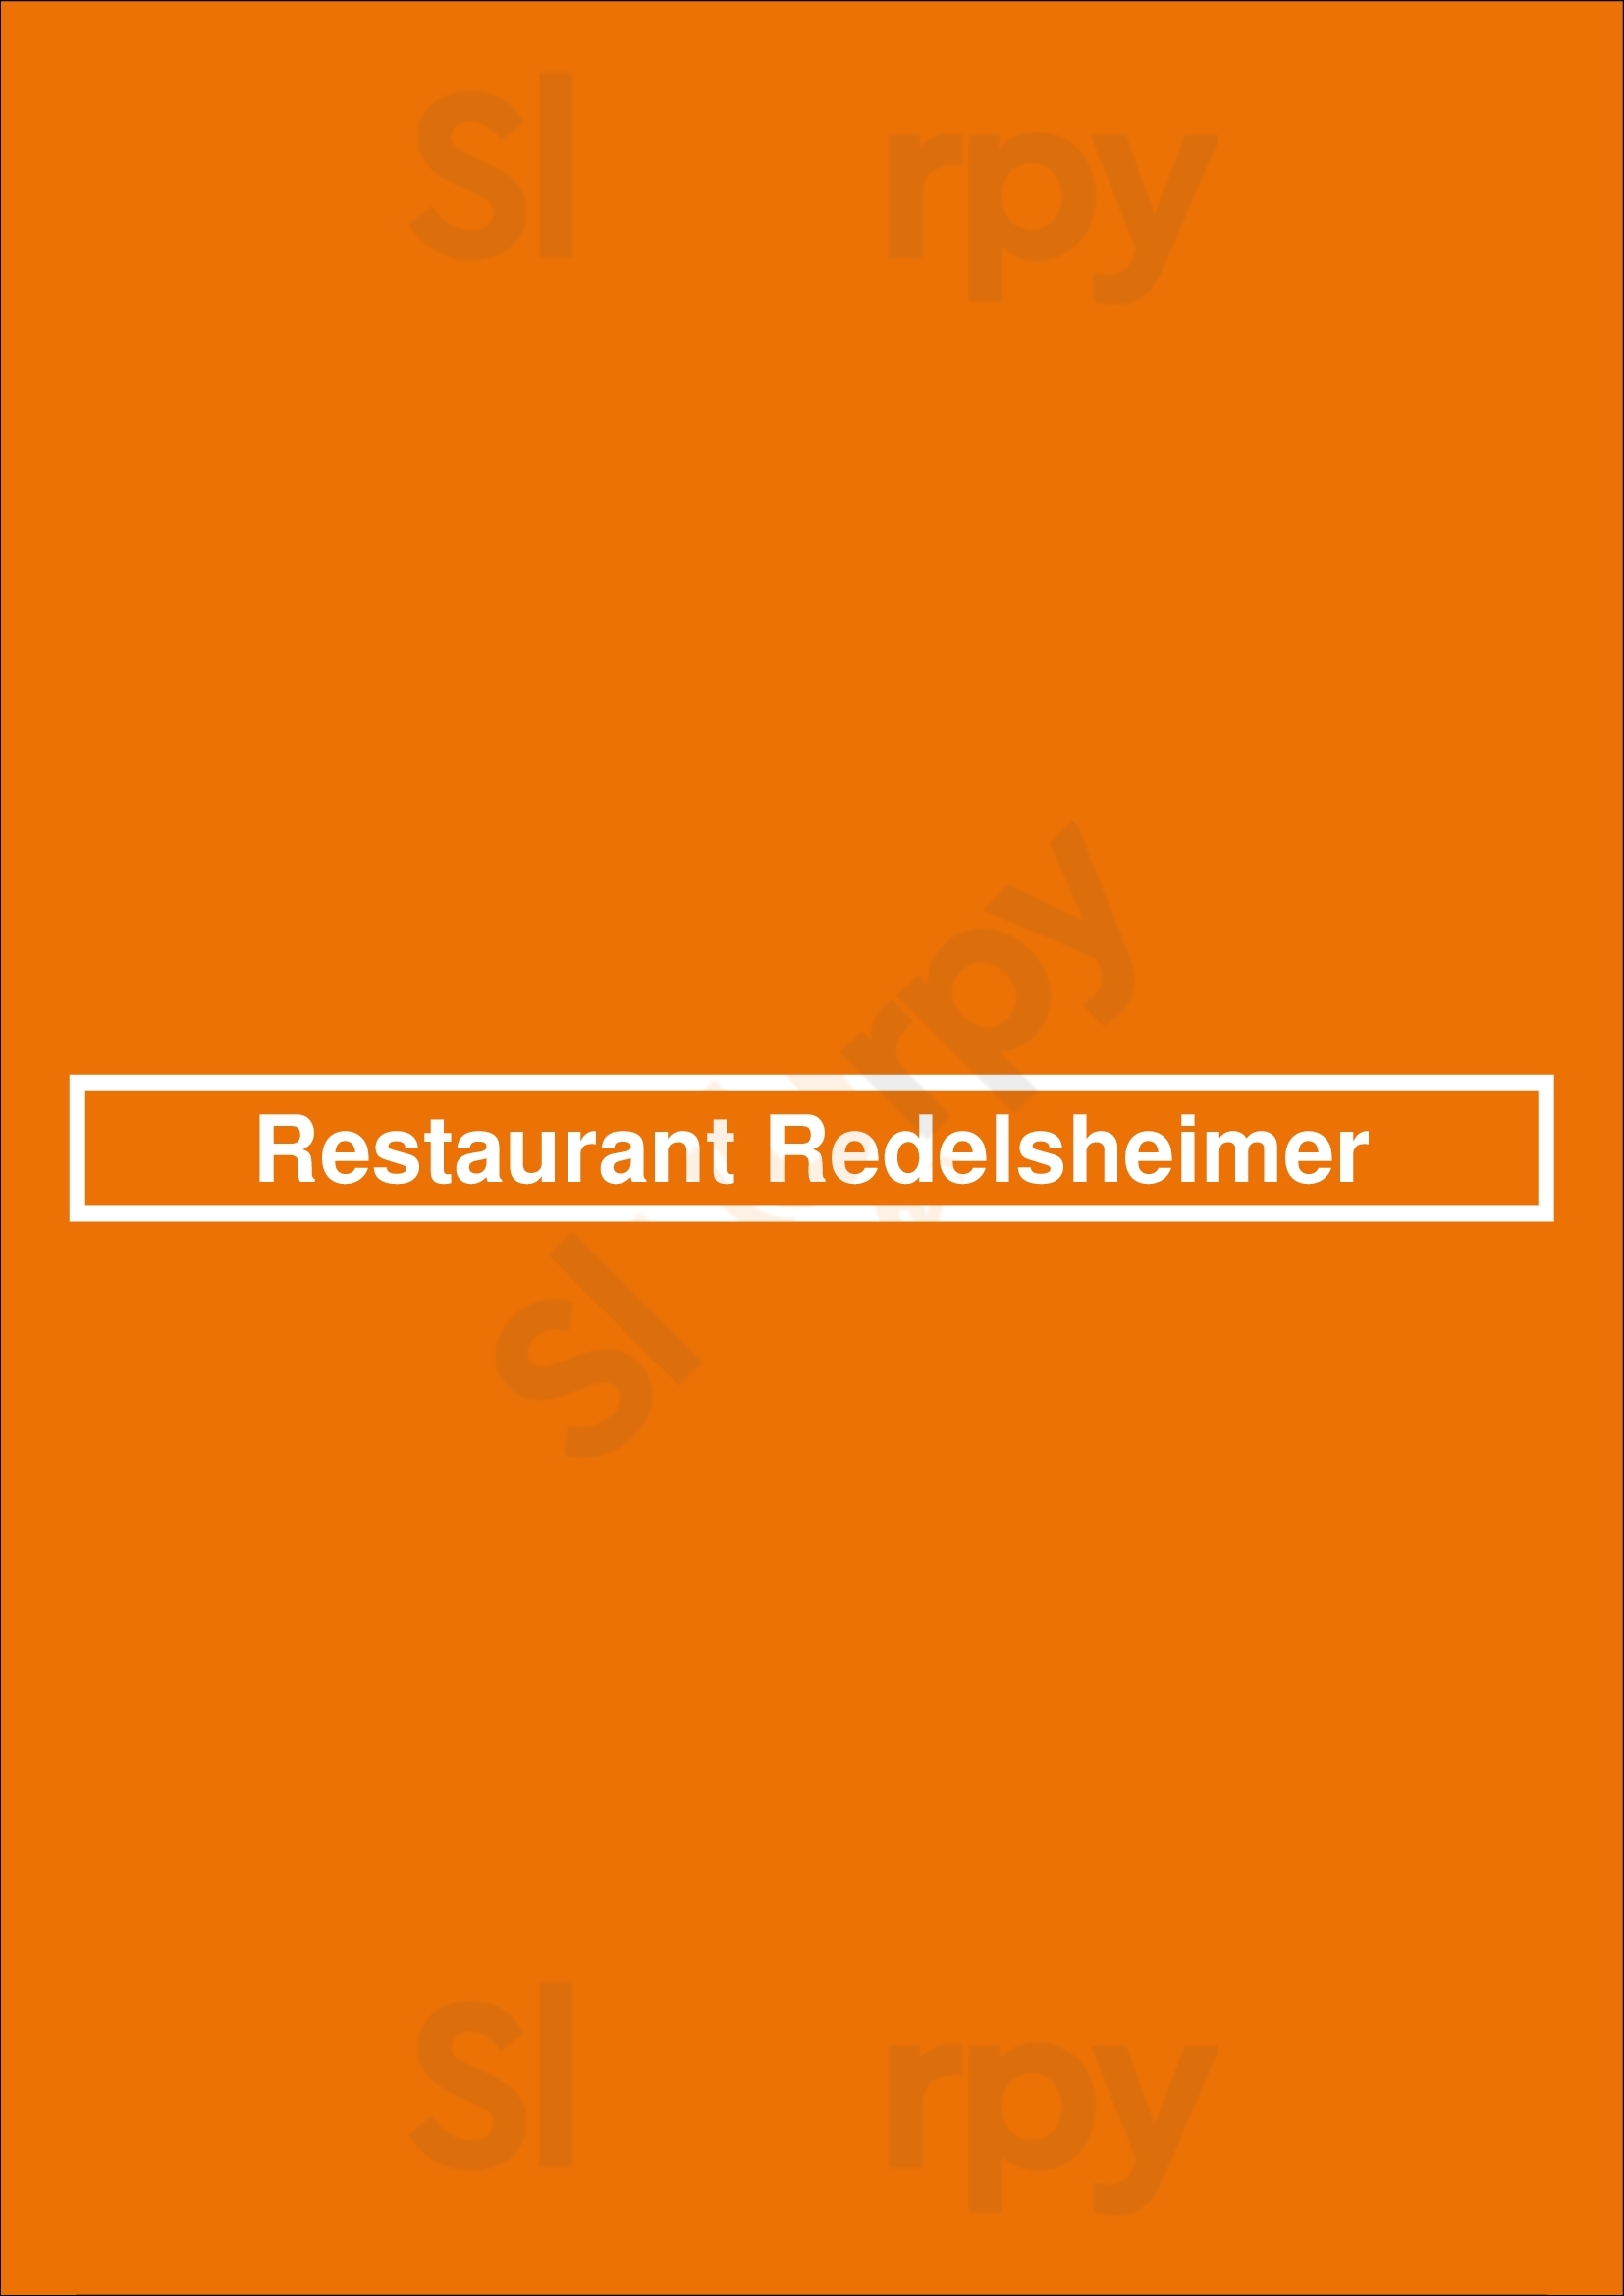 Restaurant Redelsheimer Berlin Menu - 1